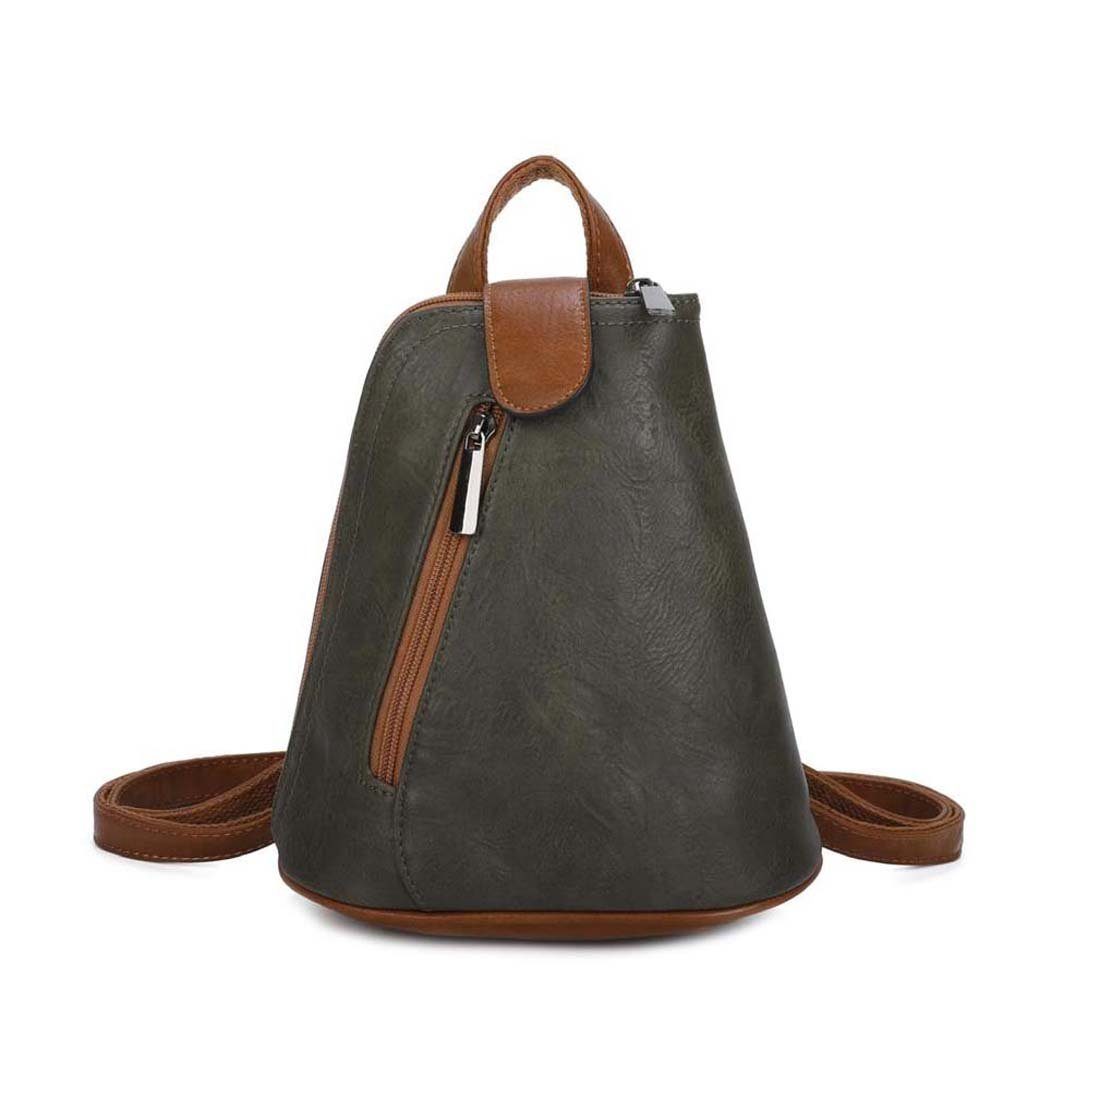 ITALYSHOP24 Rucksack Damen Tasche Schultertasche Crossover, kleiner Rucksack, Umhängetasche / Handtasche tragbar Olivgrün